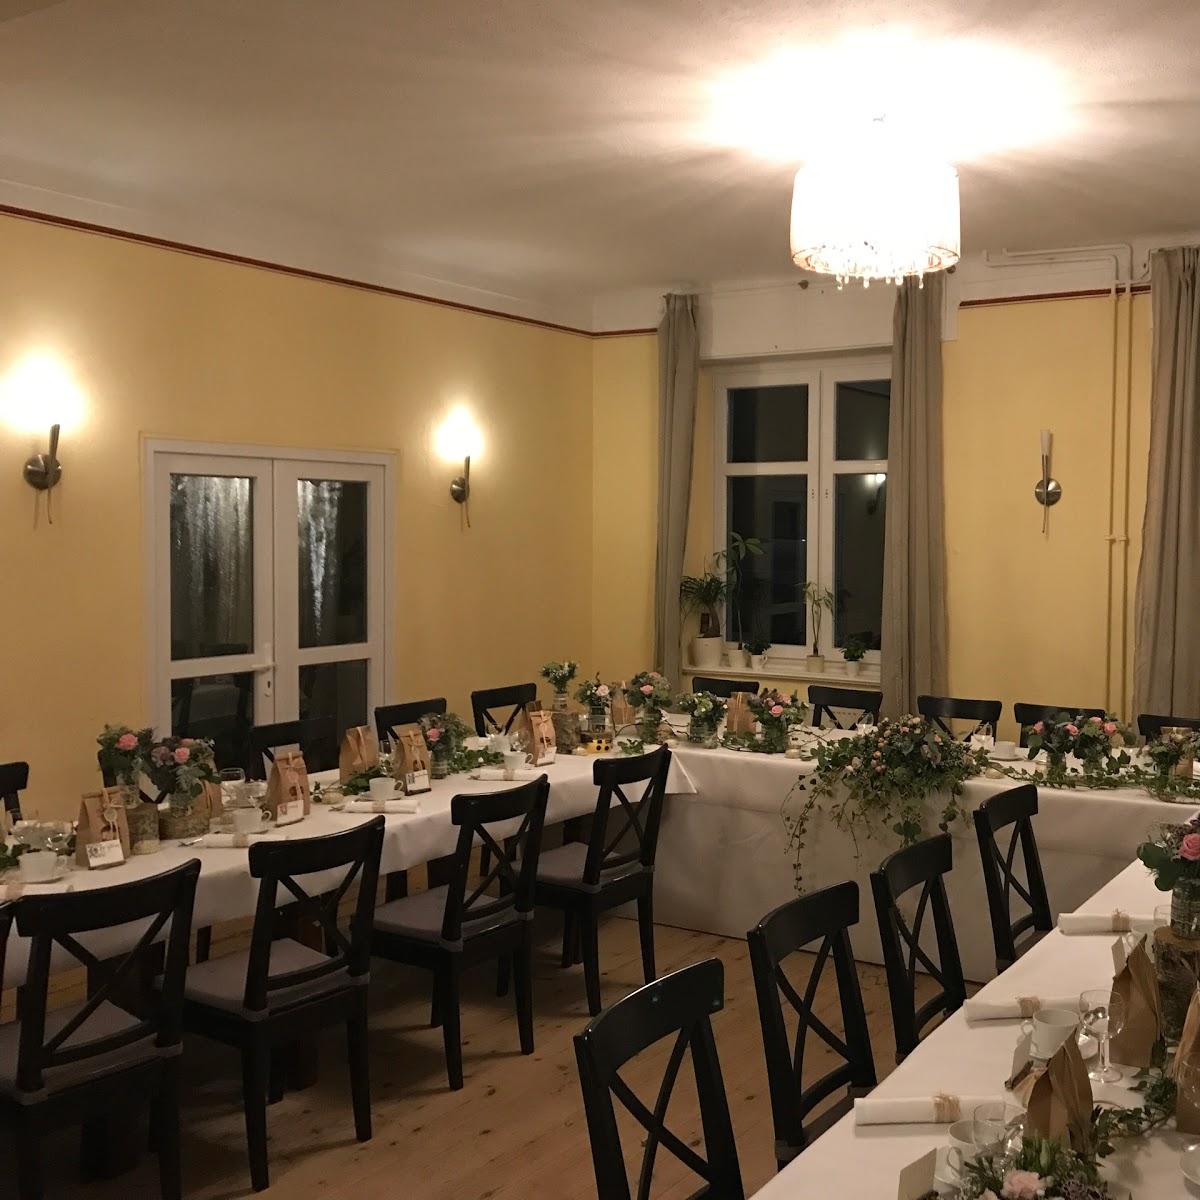 Restaurant "Landgasthof Zum alten Krug" in  Potsdam